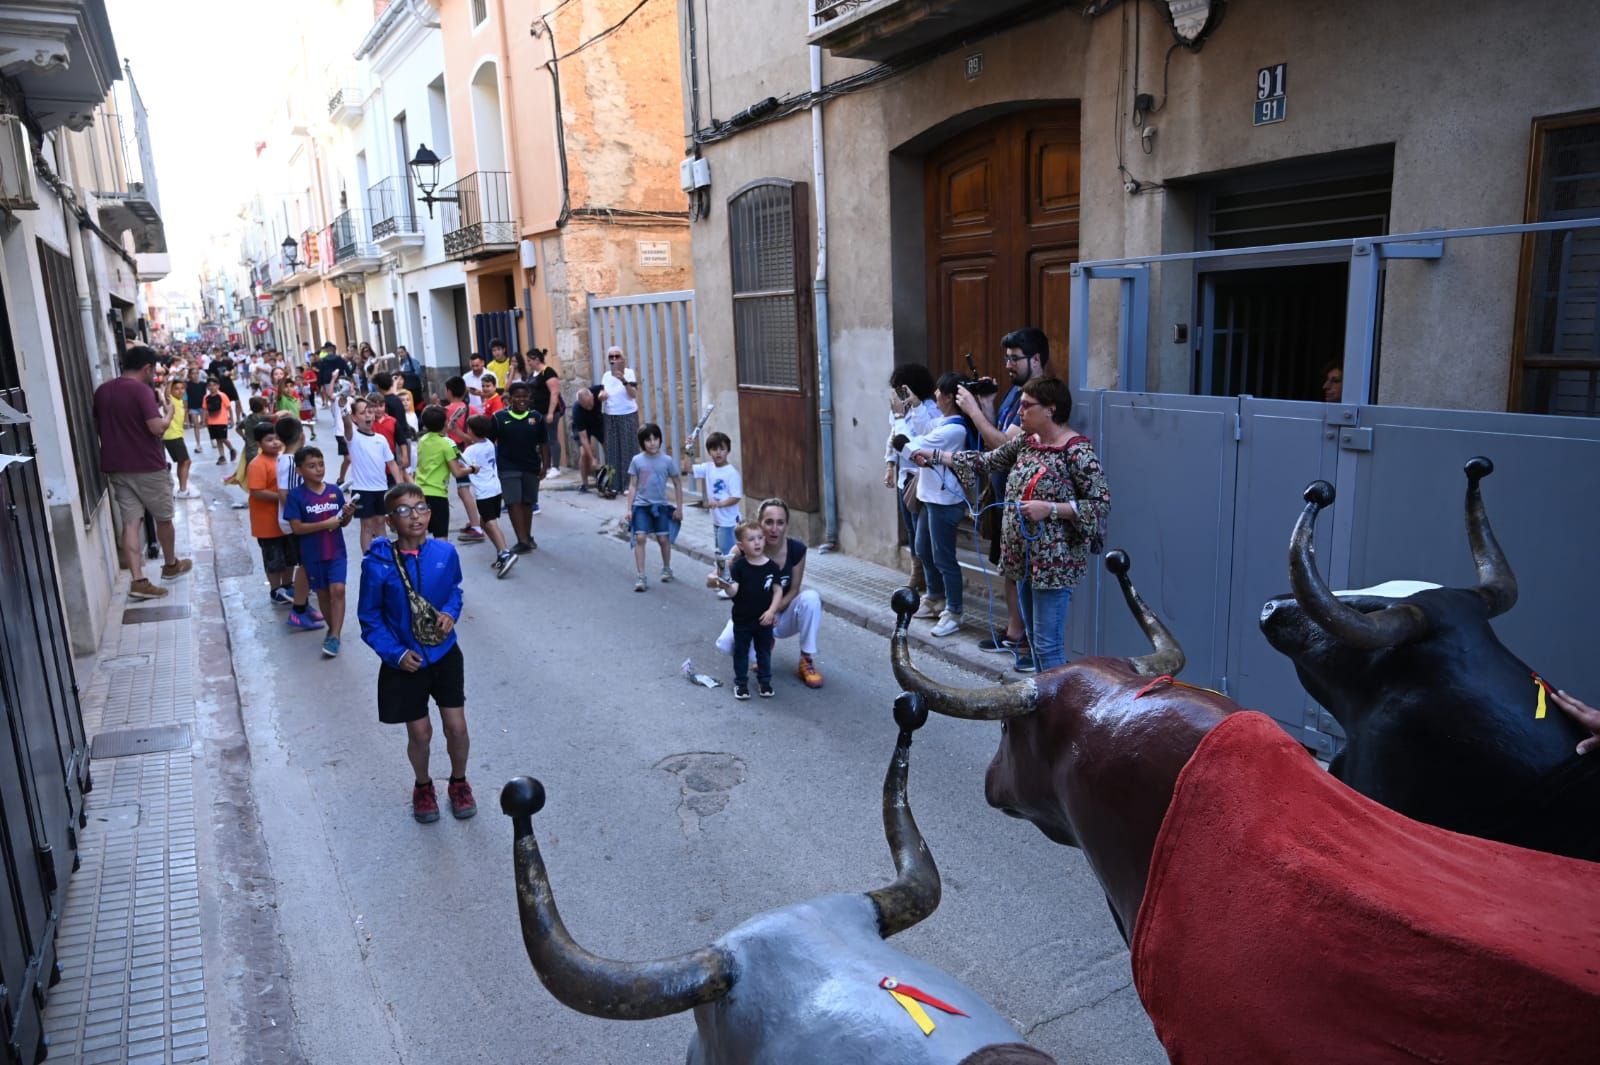 Toros, carretones infantiles y desfiles de moda: lo mejor del jueves de las fiestas de Almassora